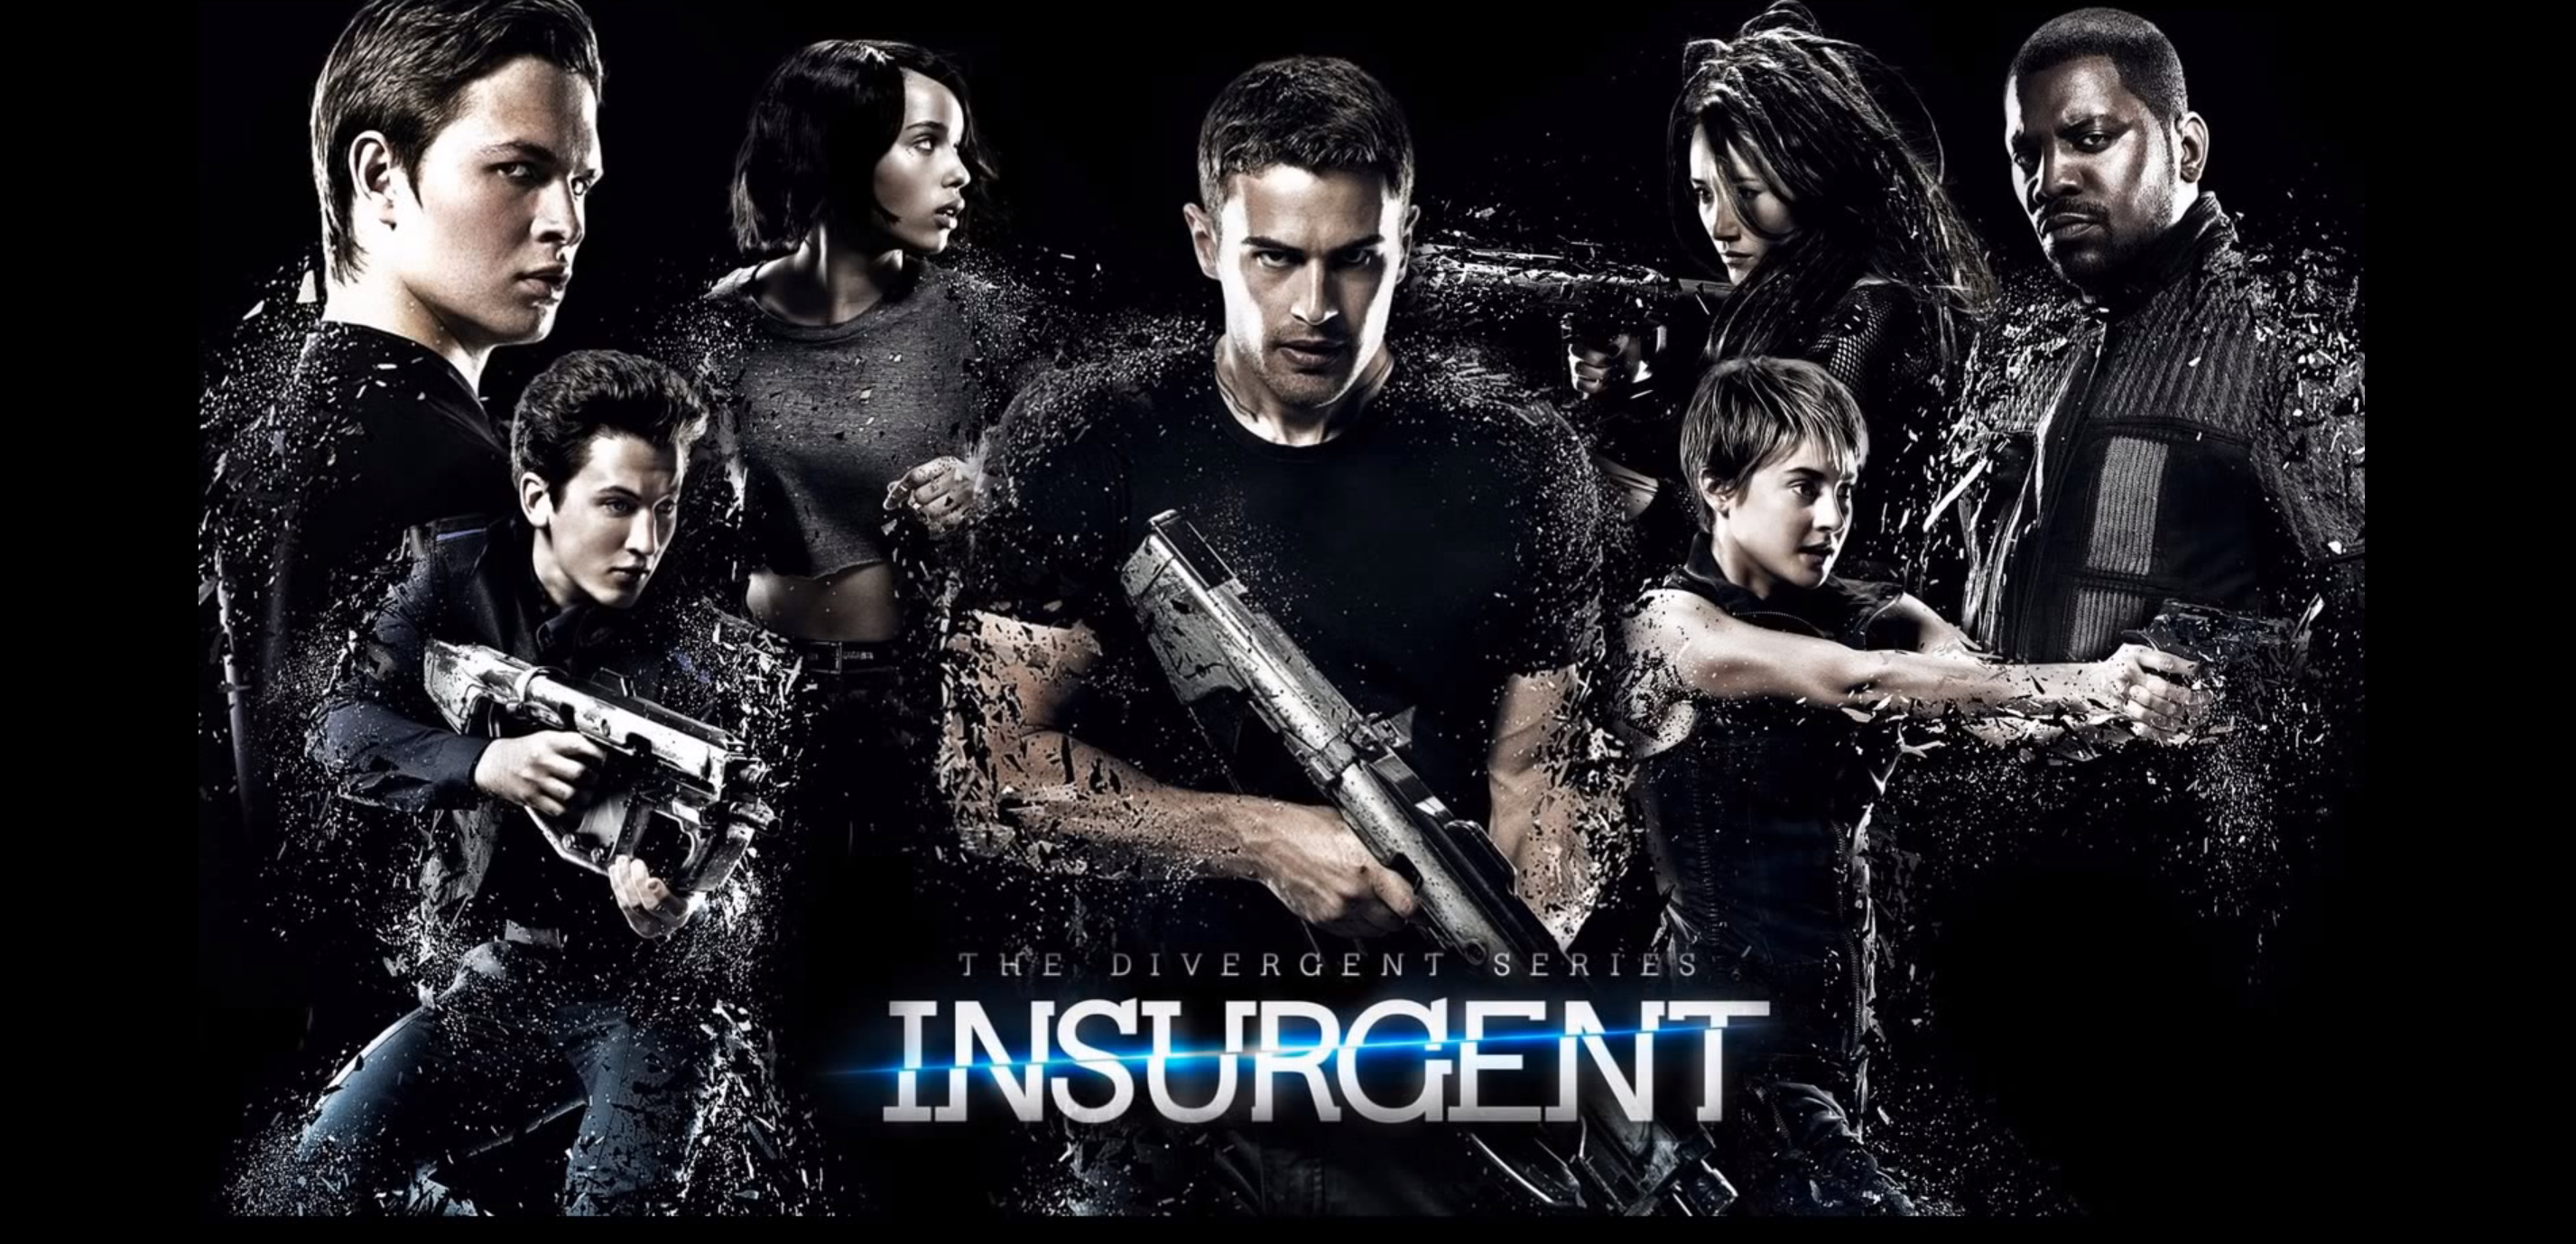 Инсургент слово. The Divergent Series: Insurgent. Дивергент, глава 2: Инсургент (2015) Постер.